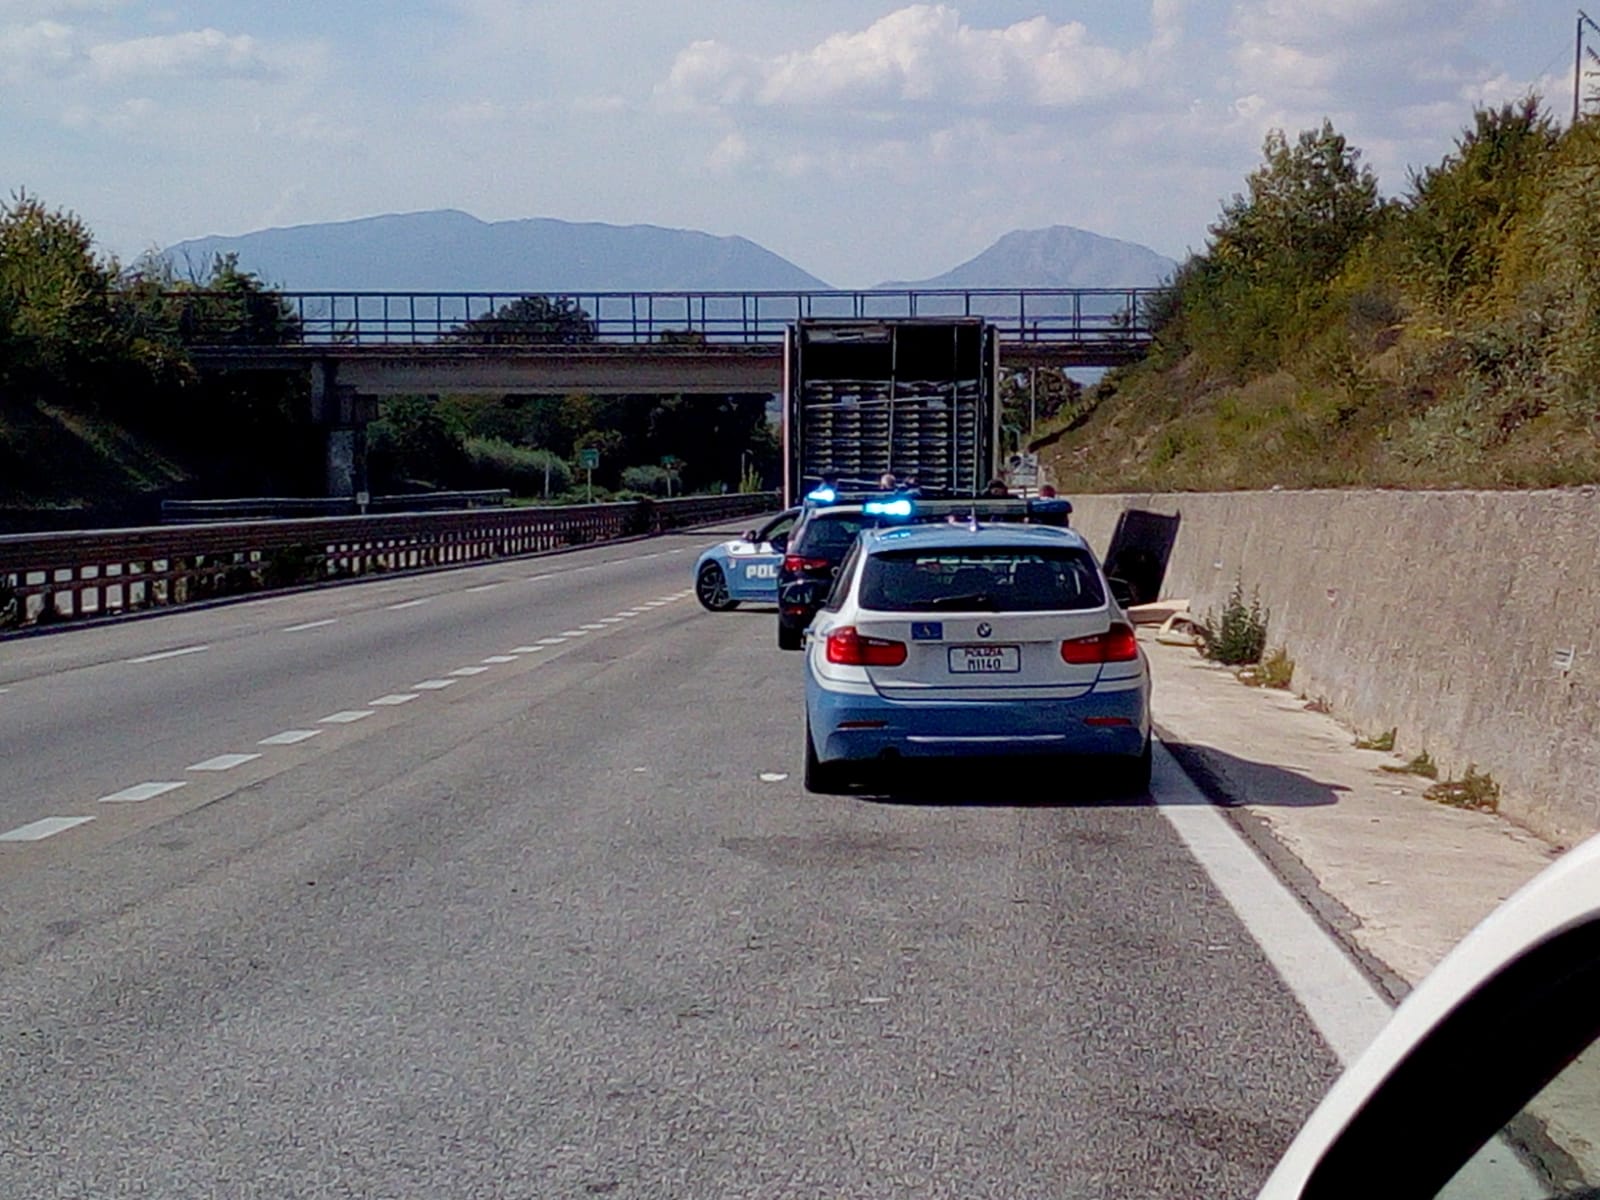 Tir con clandestini fermato lungo il raccordo A16-Benevento/FOTO